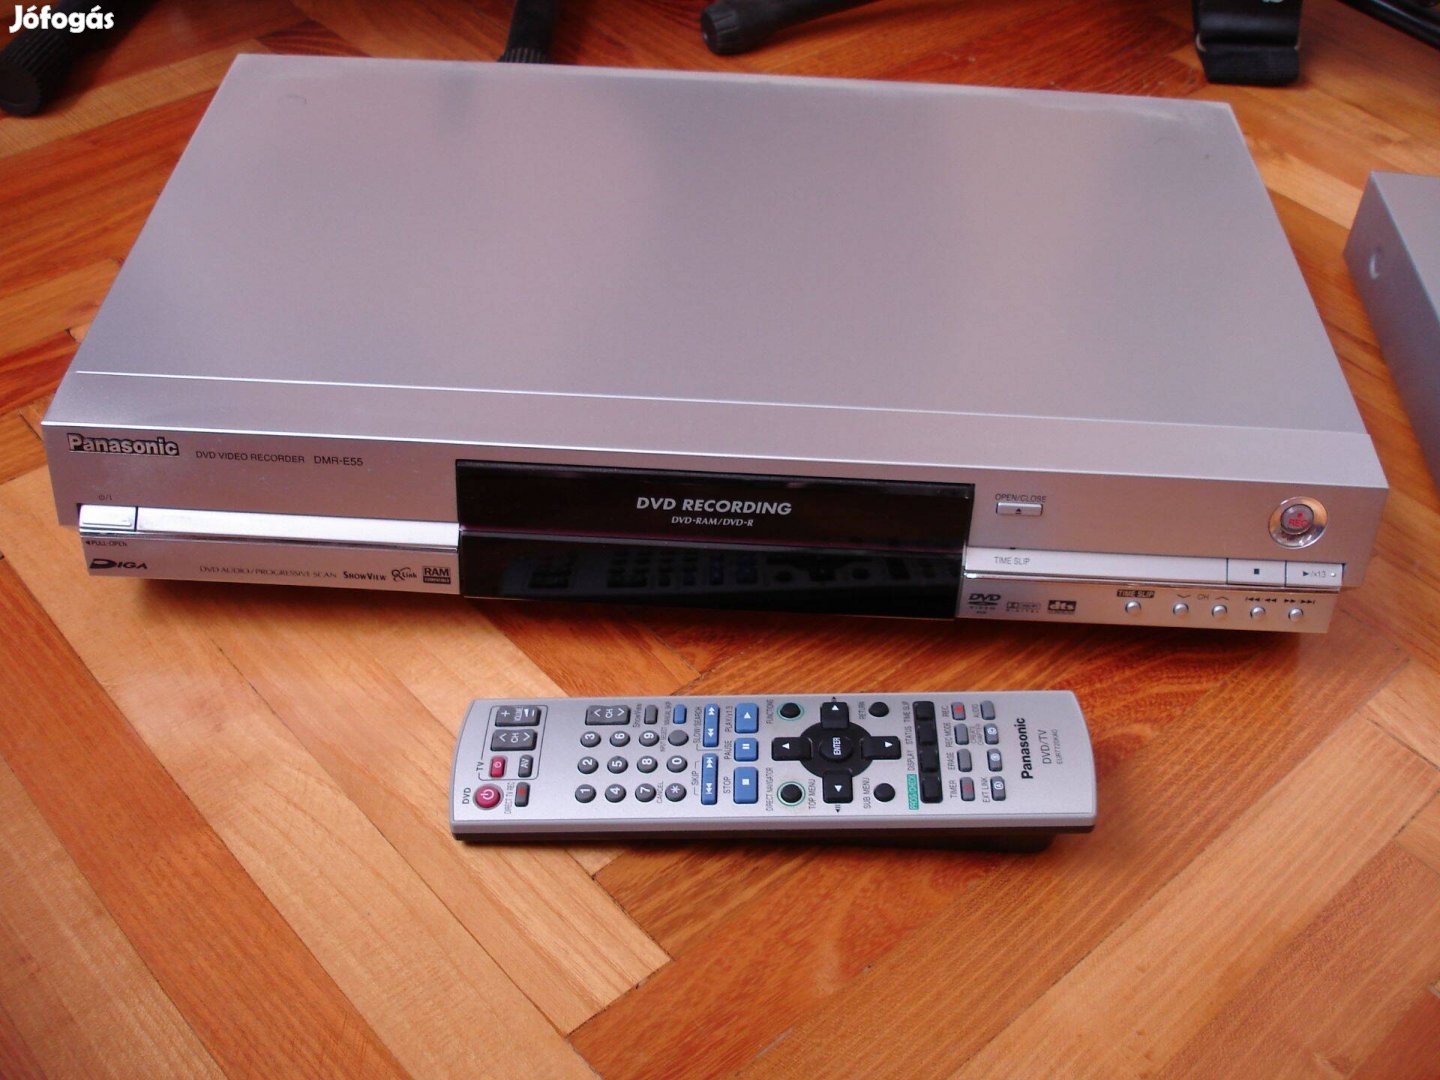 Panasonic dvd felvevő DMR-E55 dobozos, újszerű állapotban